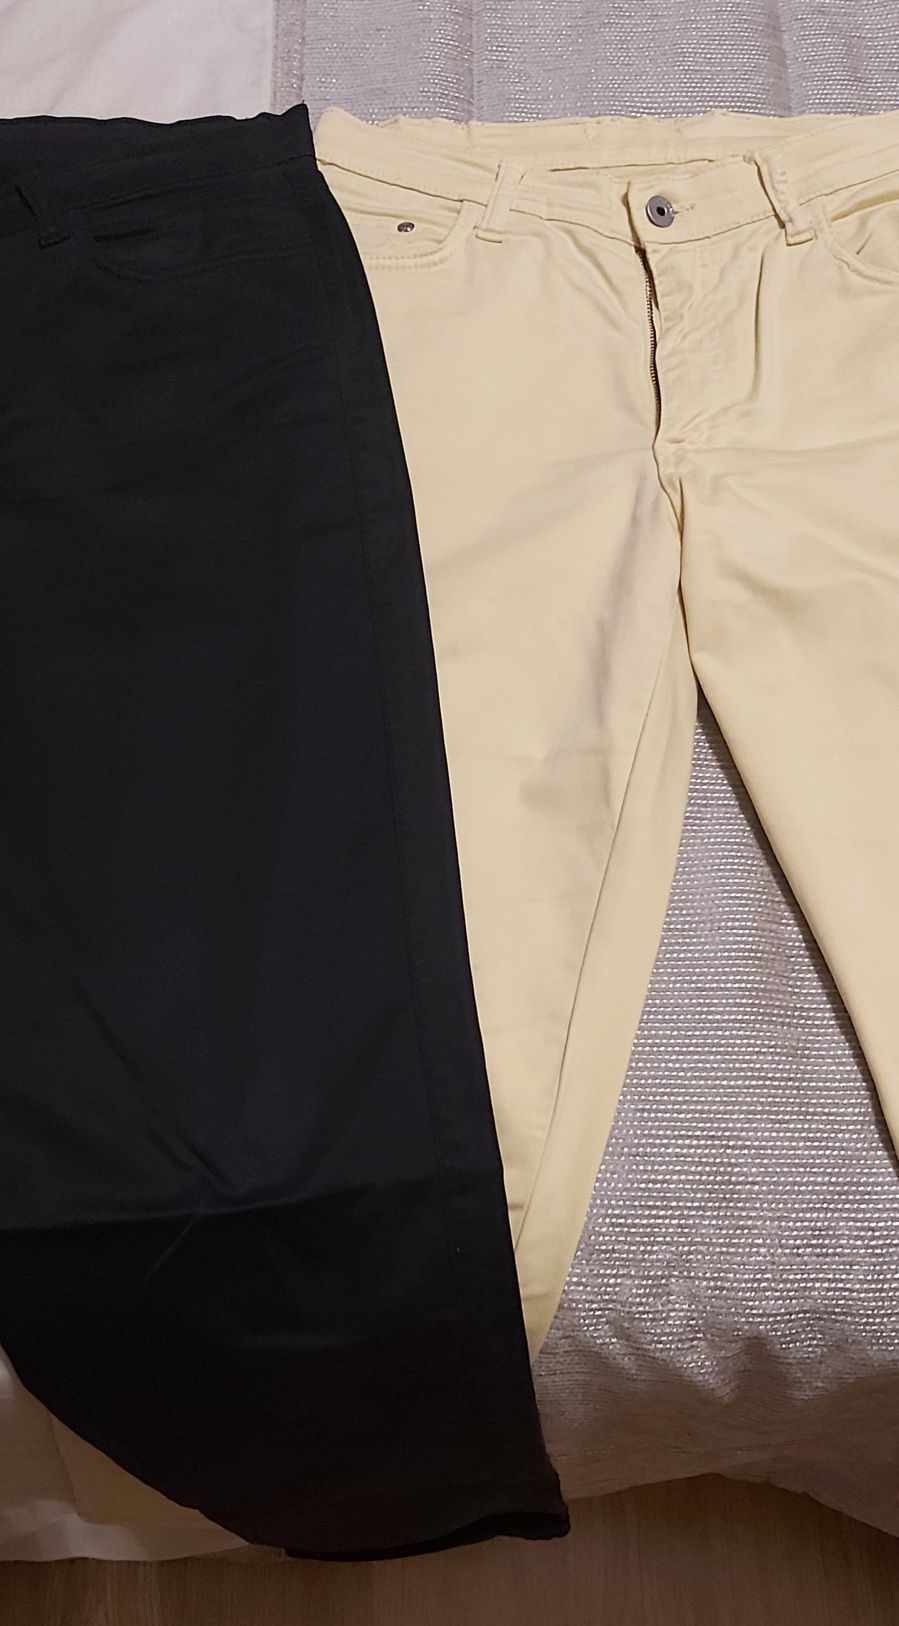 2 calças sarja elastica 42 amarela / preta